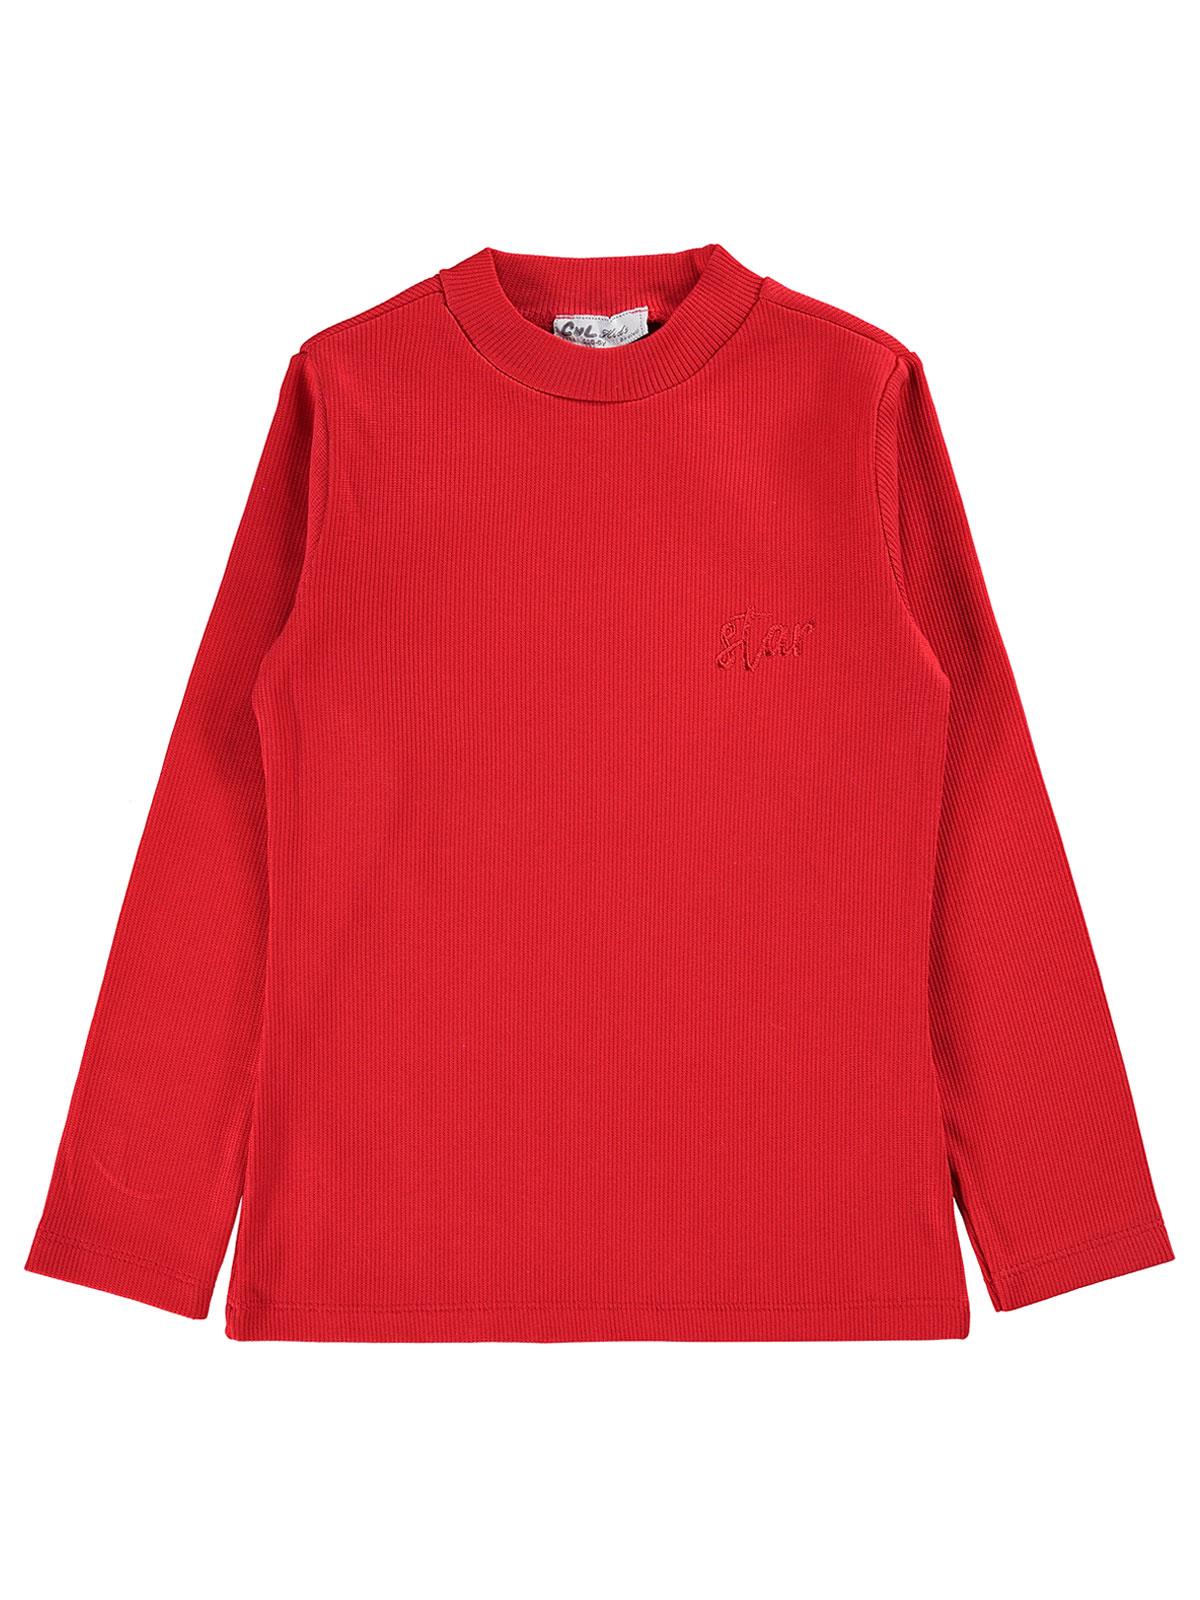 Cvl Kız Çocuk Sweatshirt 6-9 Yaş Kırmızı